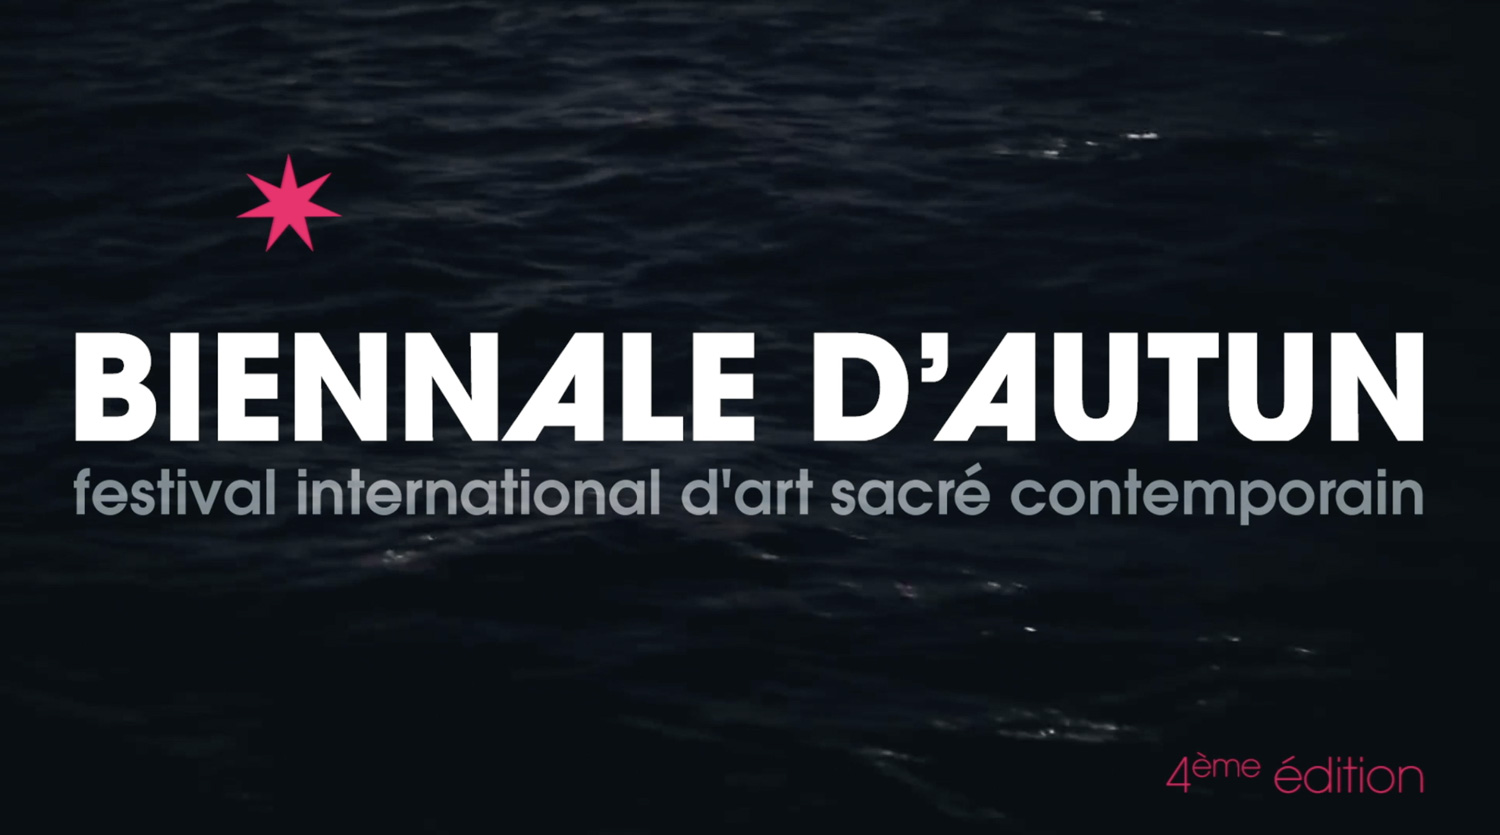 Visitez la Biennale d’Autun !